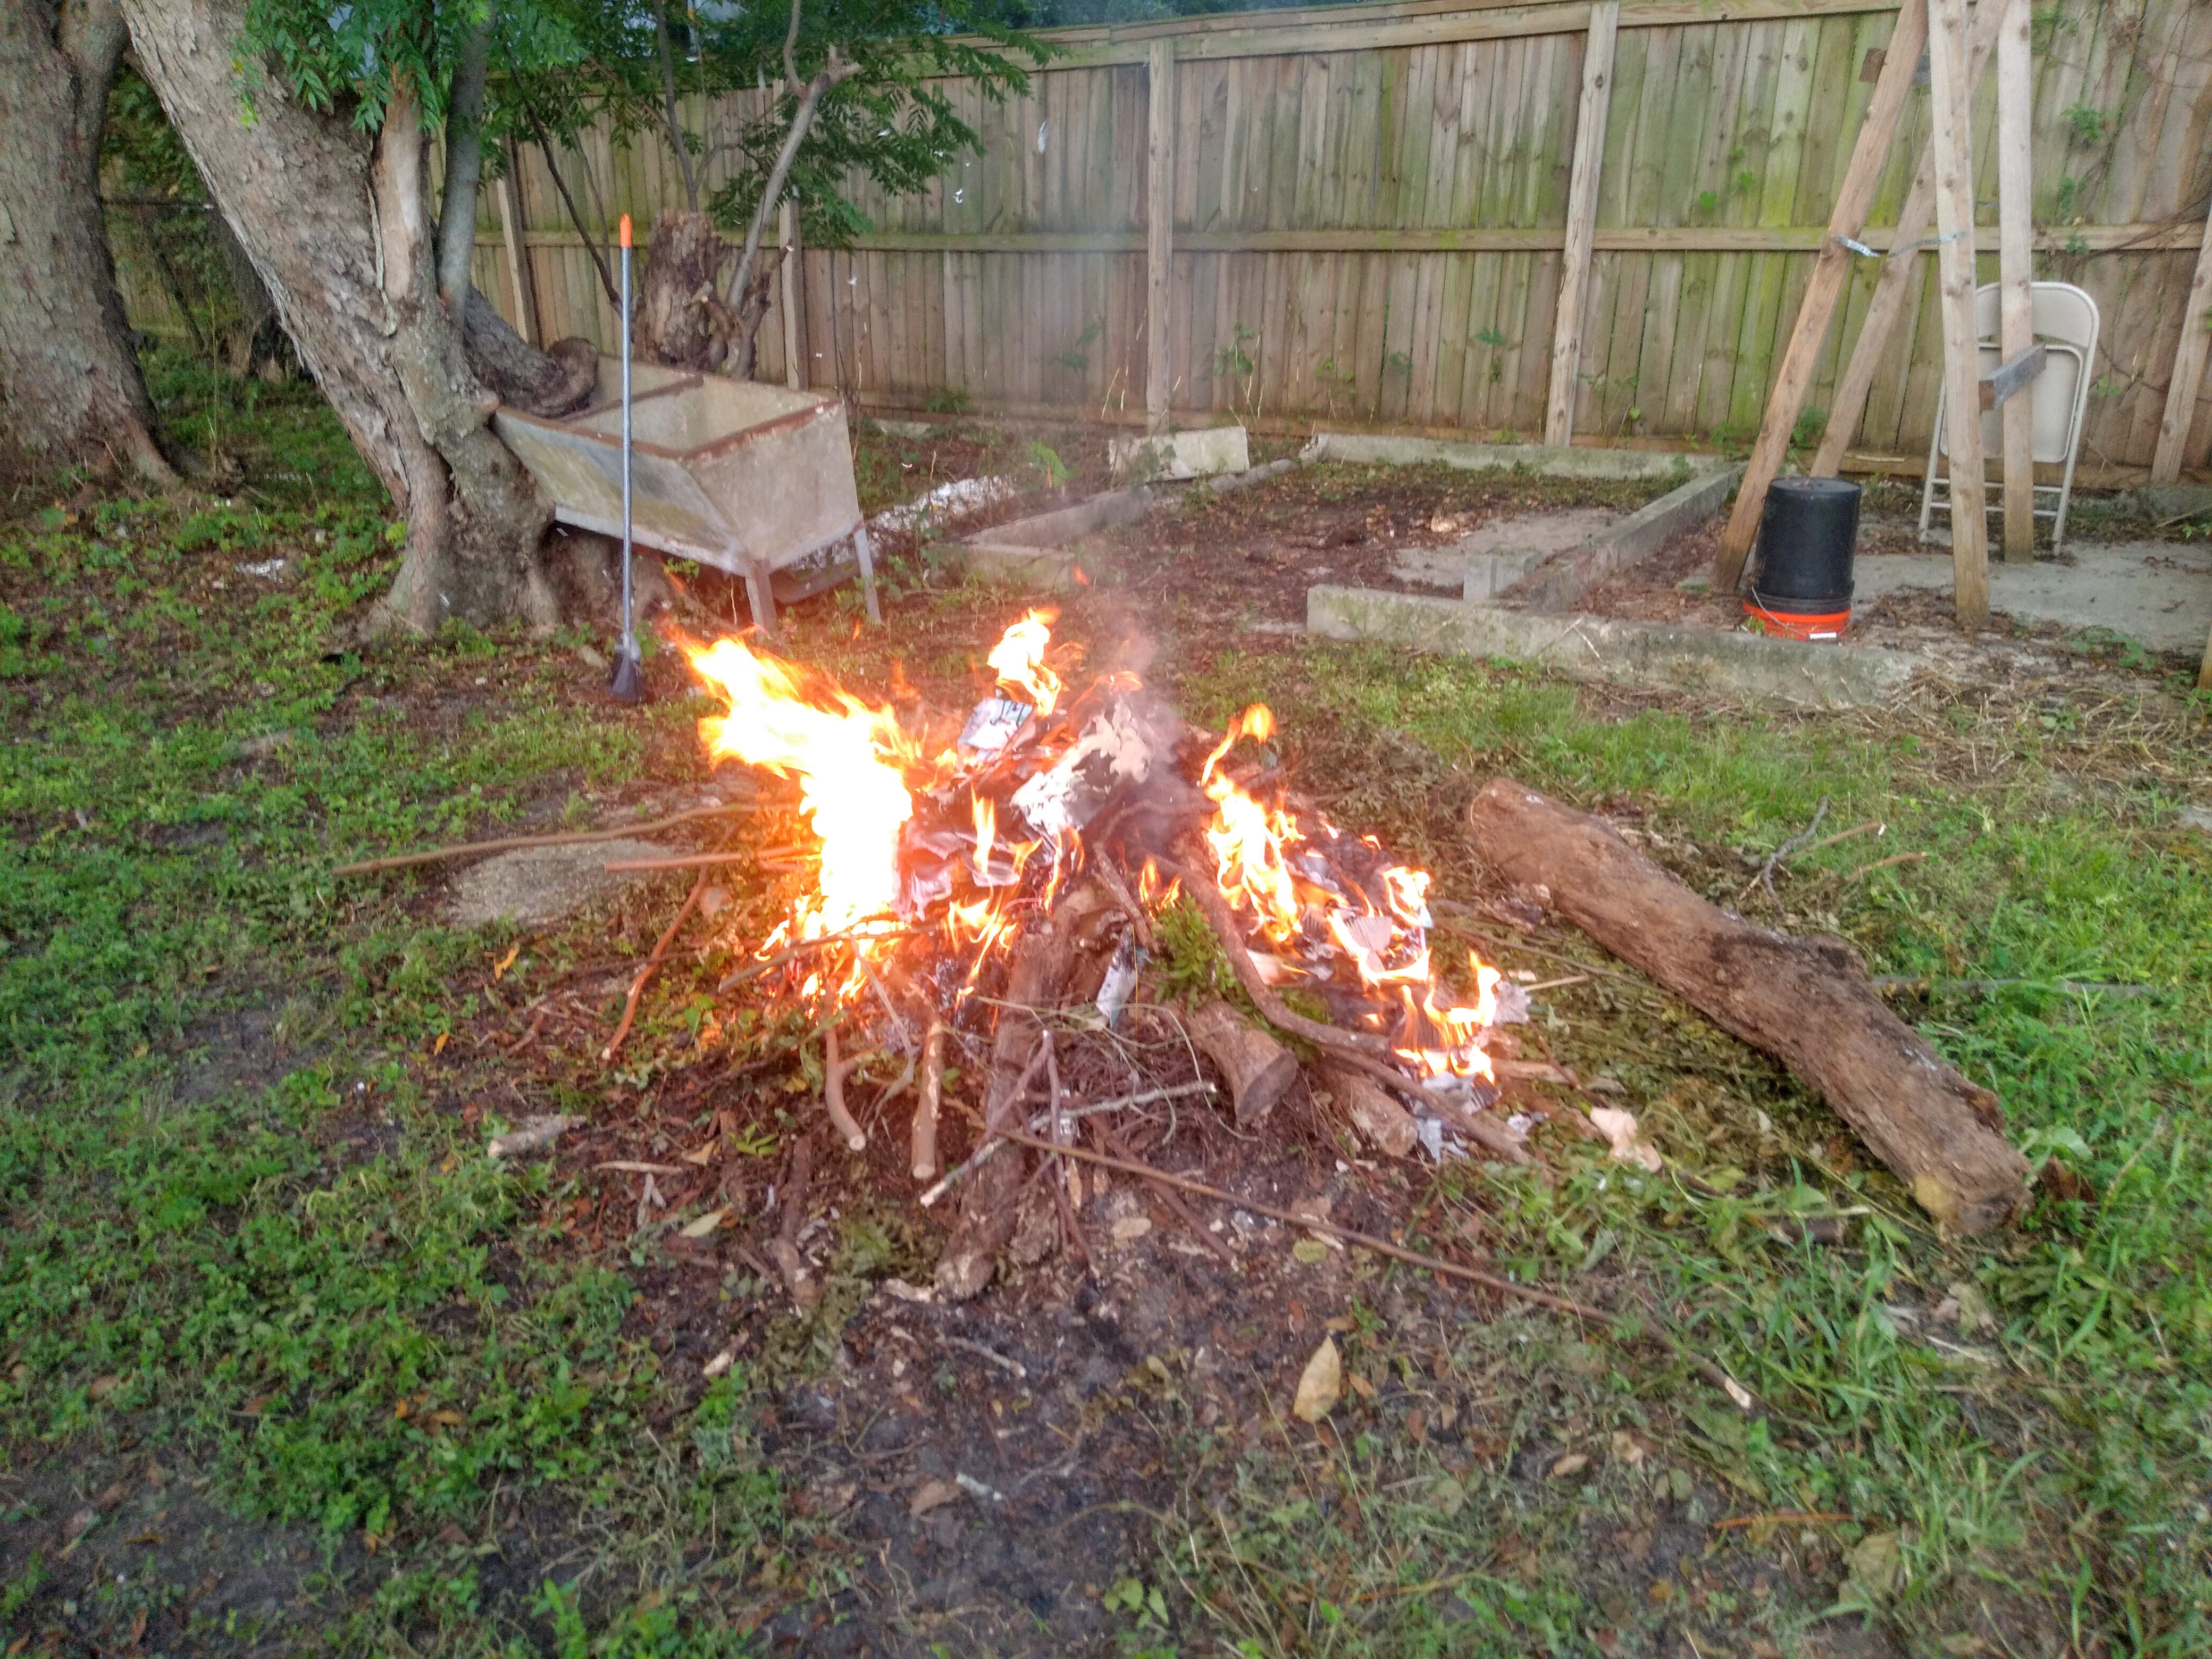 Backyard bonfire, August, 16, 2022.